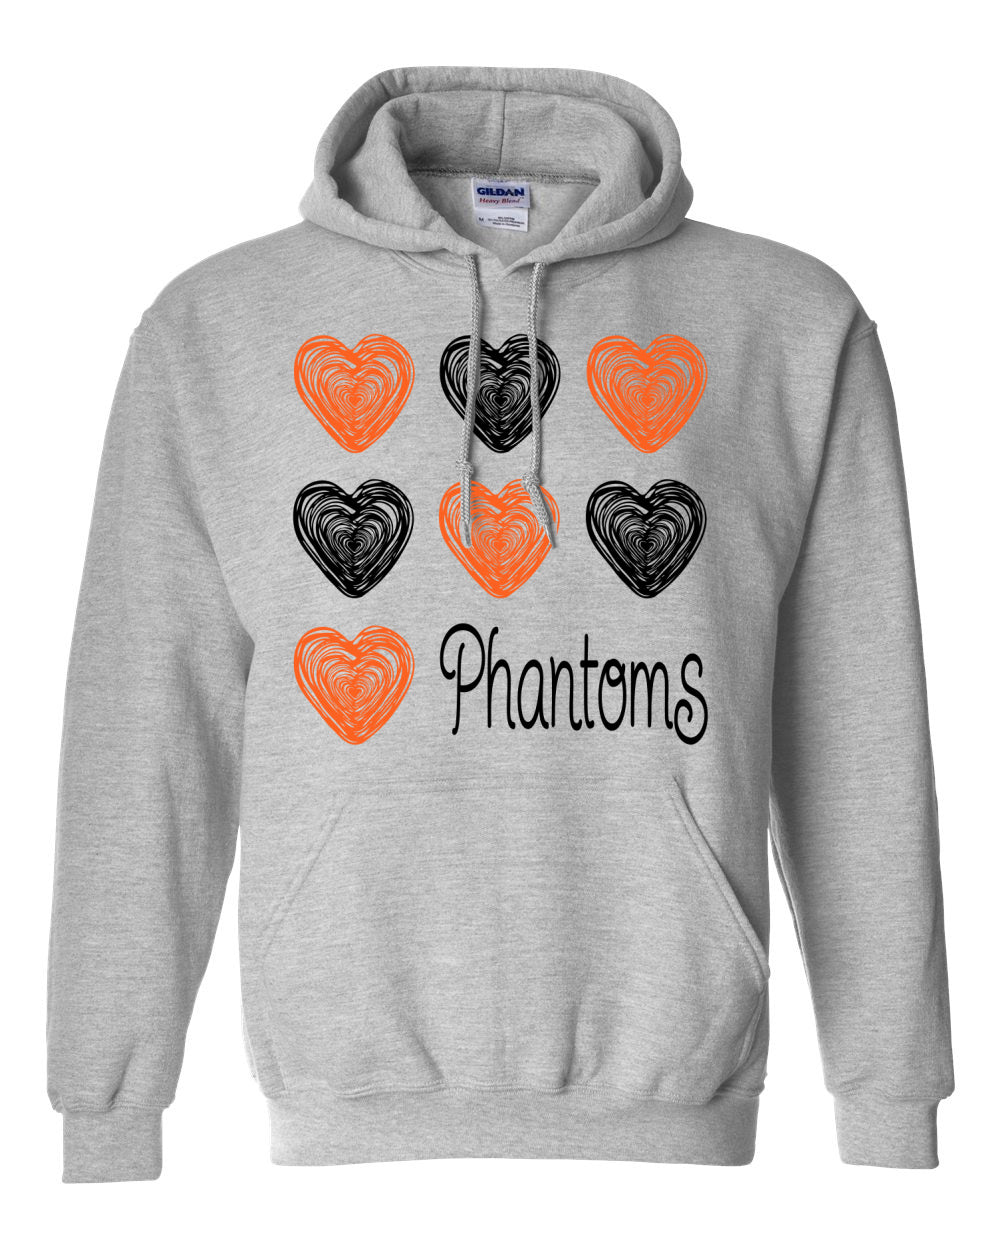 West De Pere Phantoms Merch - Hoodie Sweatshirt - Doodle Hearts